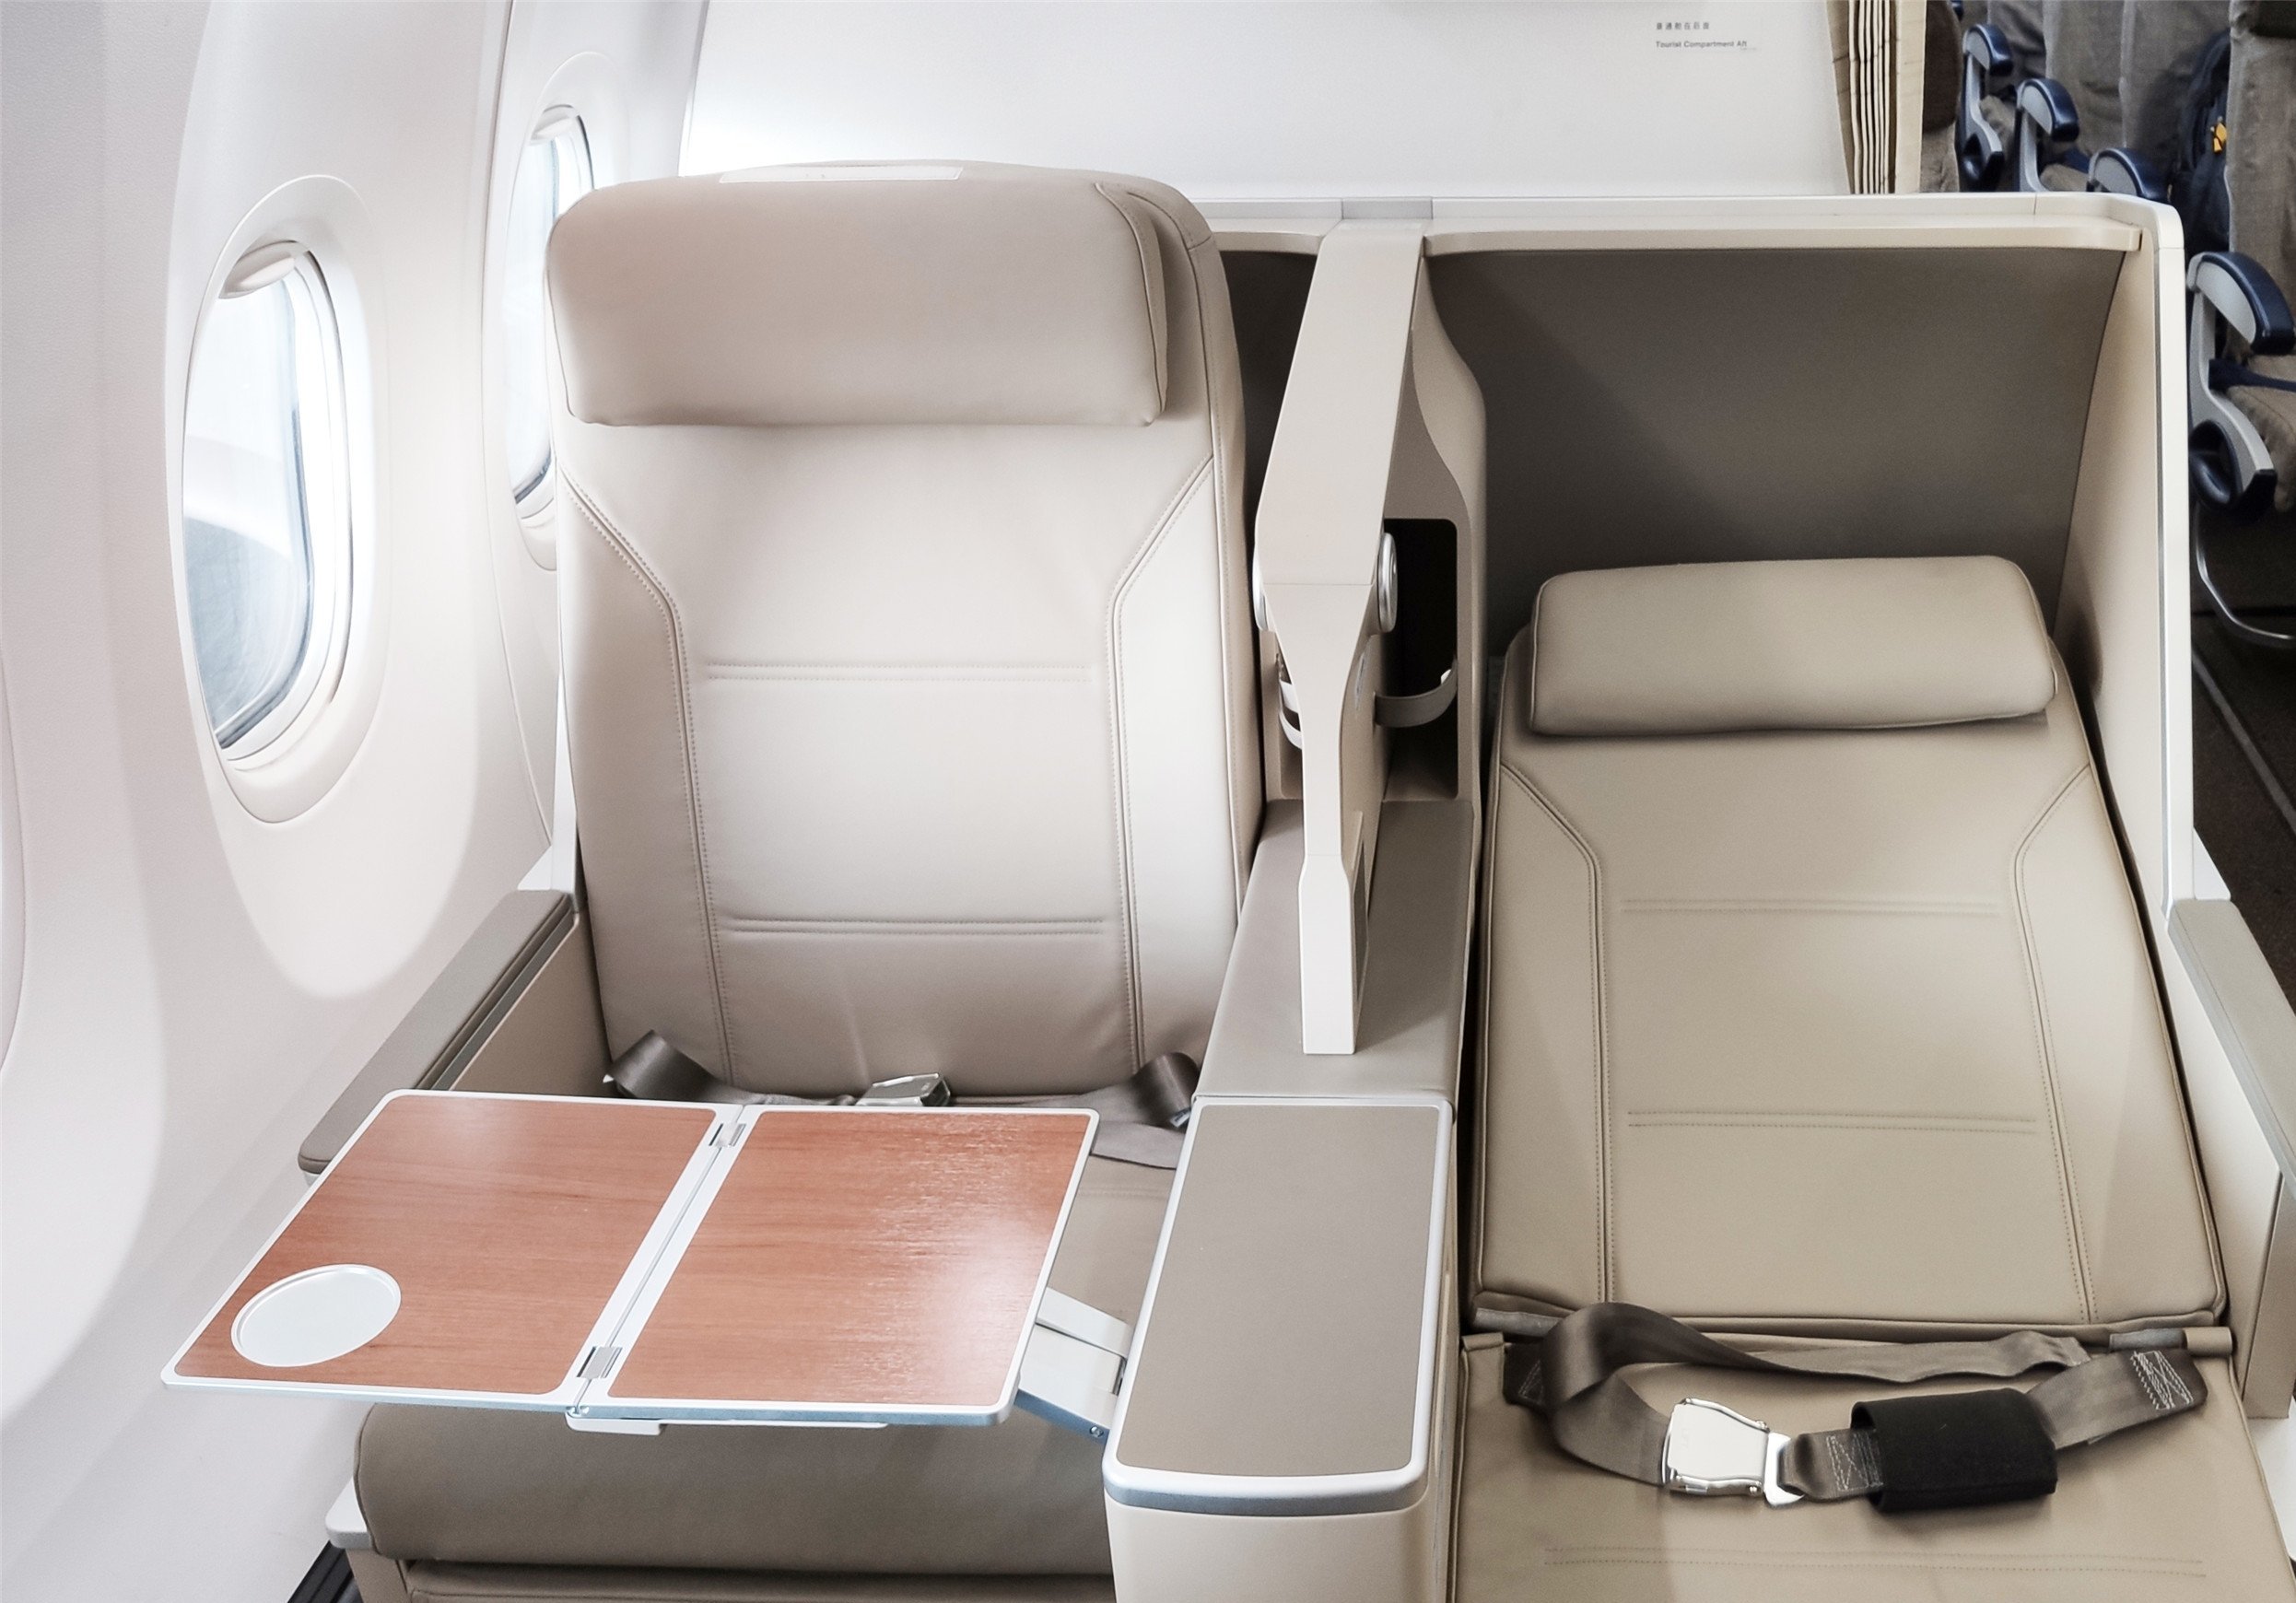 东航技术完成了首架波音737客机公务舱座椅的改装设计